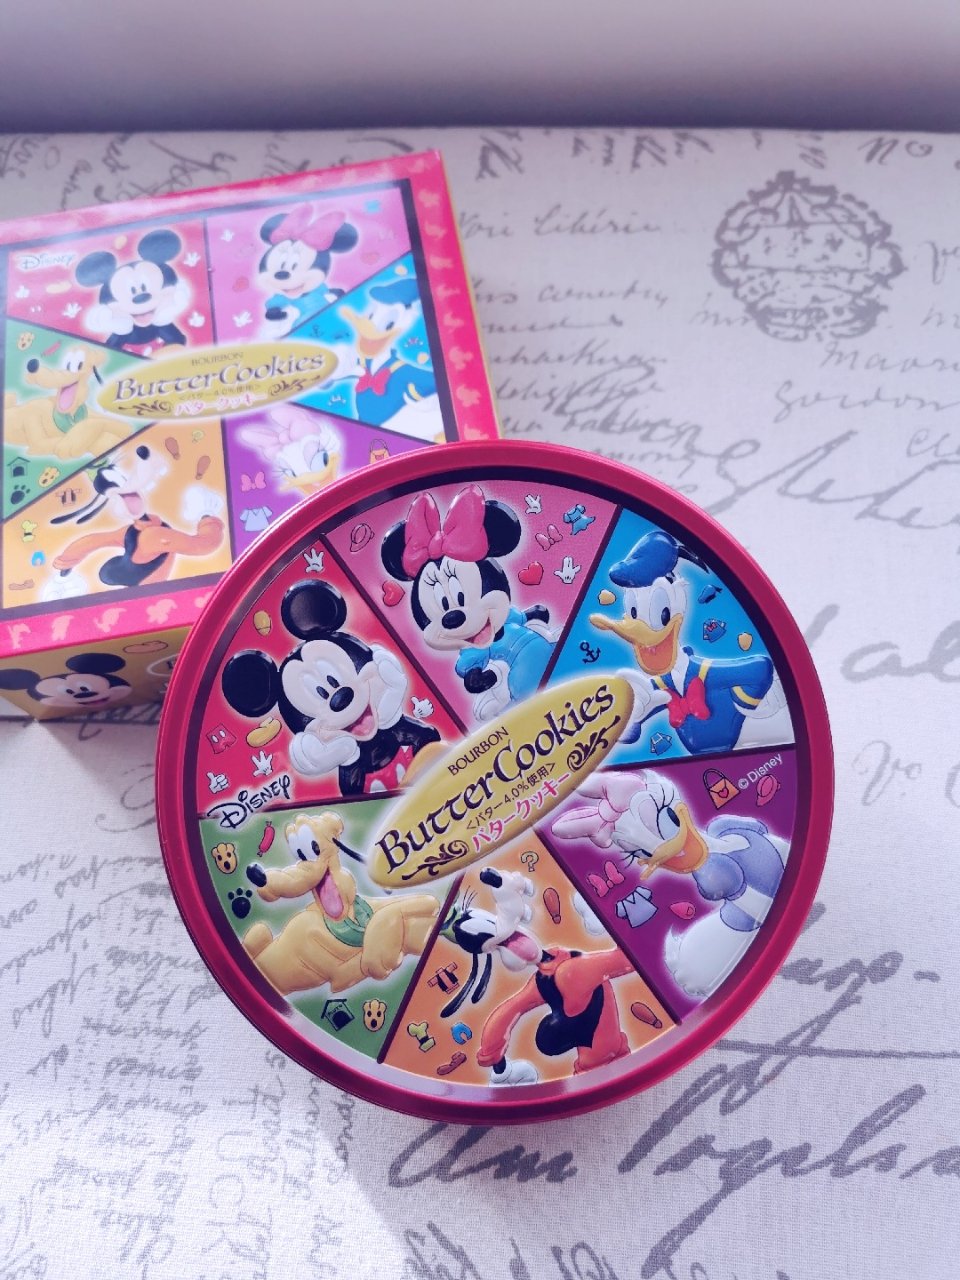 日本直邮的迪士尼限定曲奇礼盒...